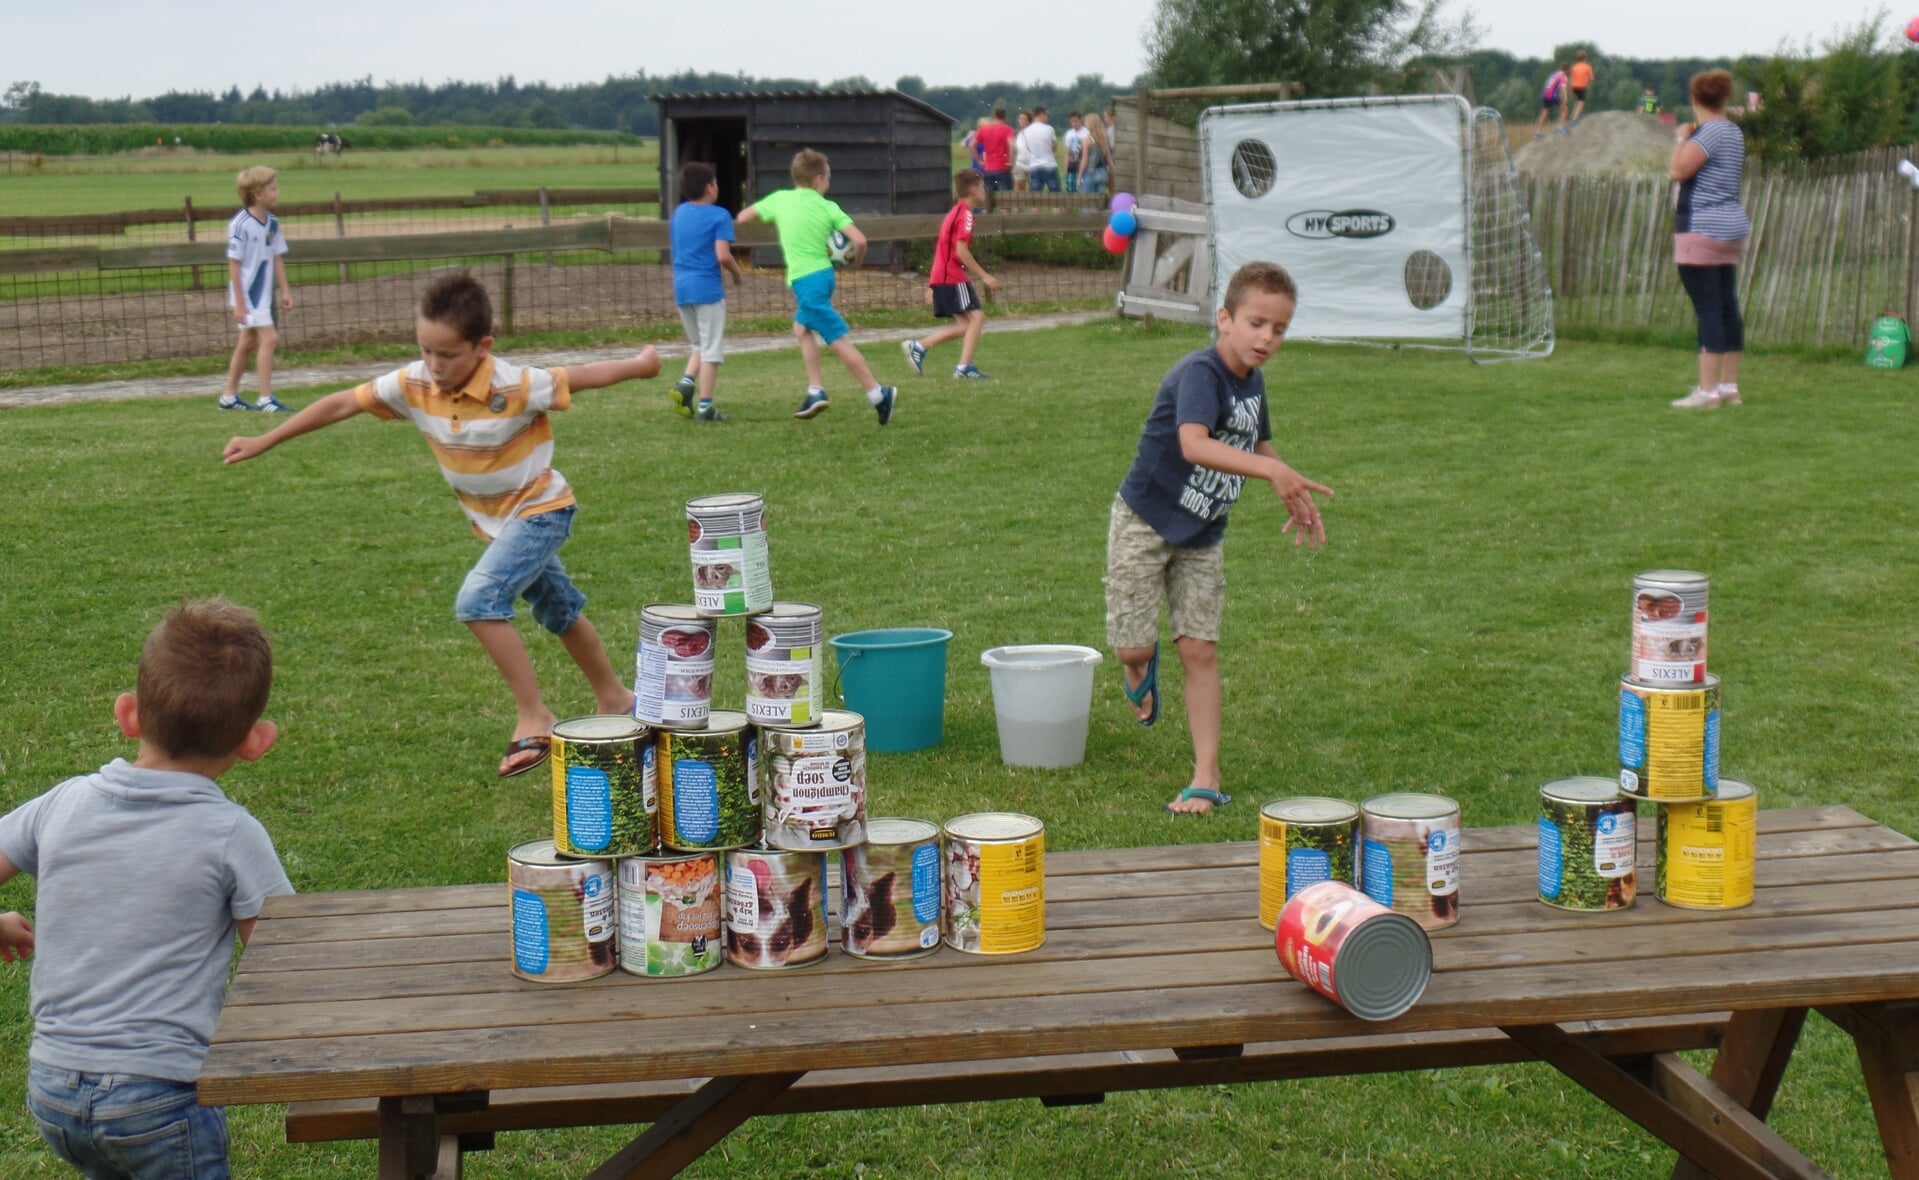 Enkele jeugdige bezoekers van het kinderfestijn bij activiteitenboerderij 't Dommeltje in Boxtel vermaken zich met blikken gooien. (Foto: Stefan Latijnhouwers).